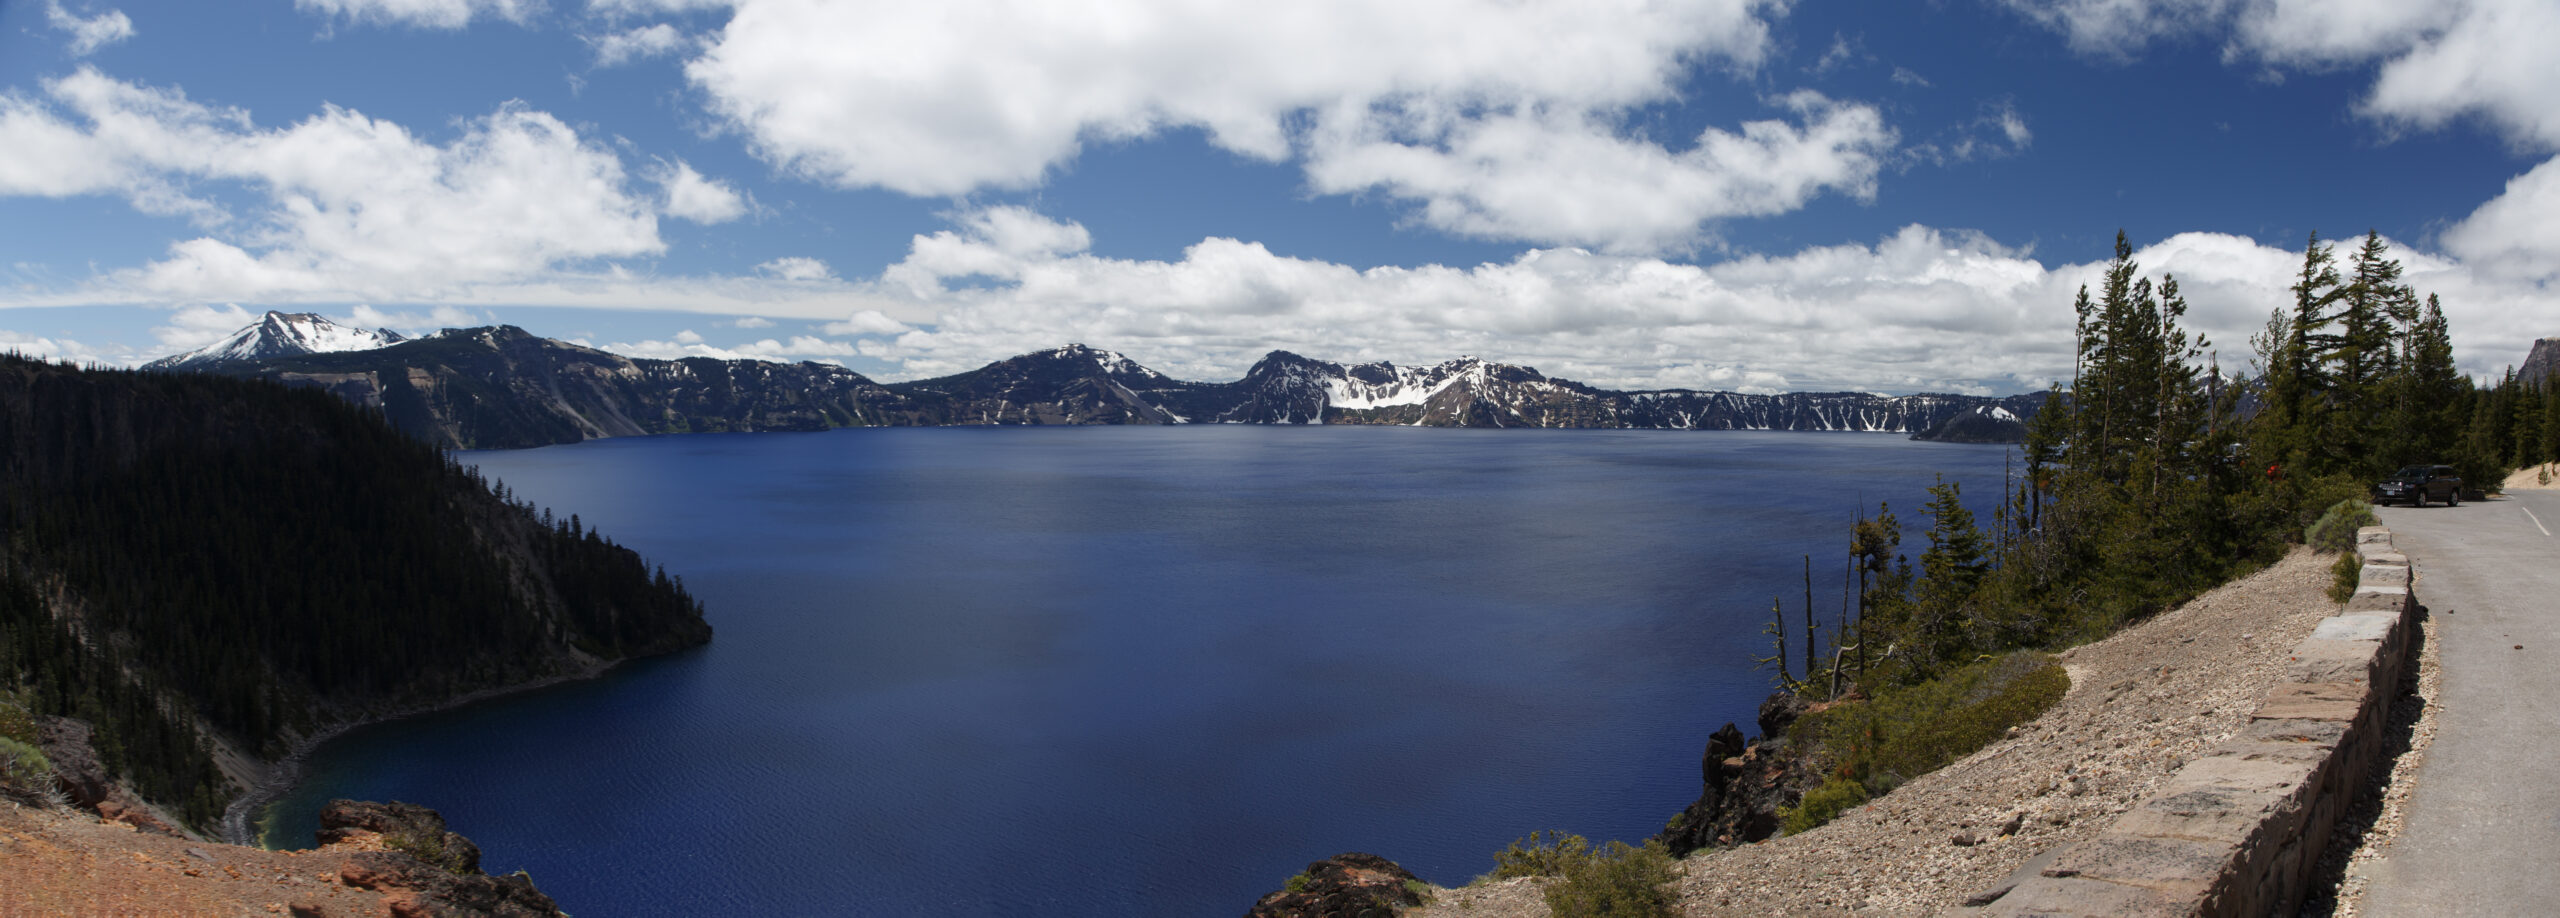 Travel: Crater Lake Oregon